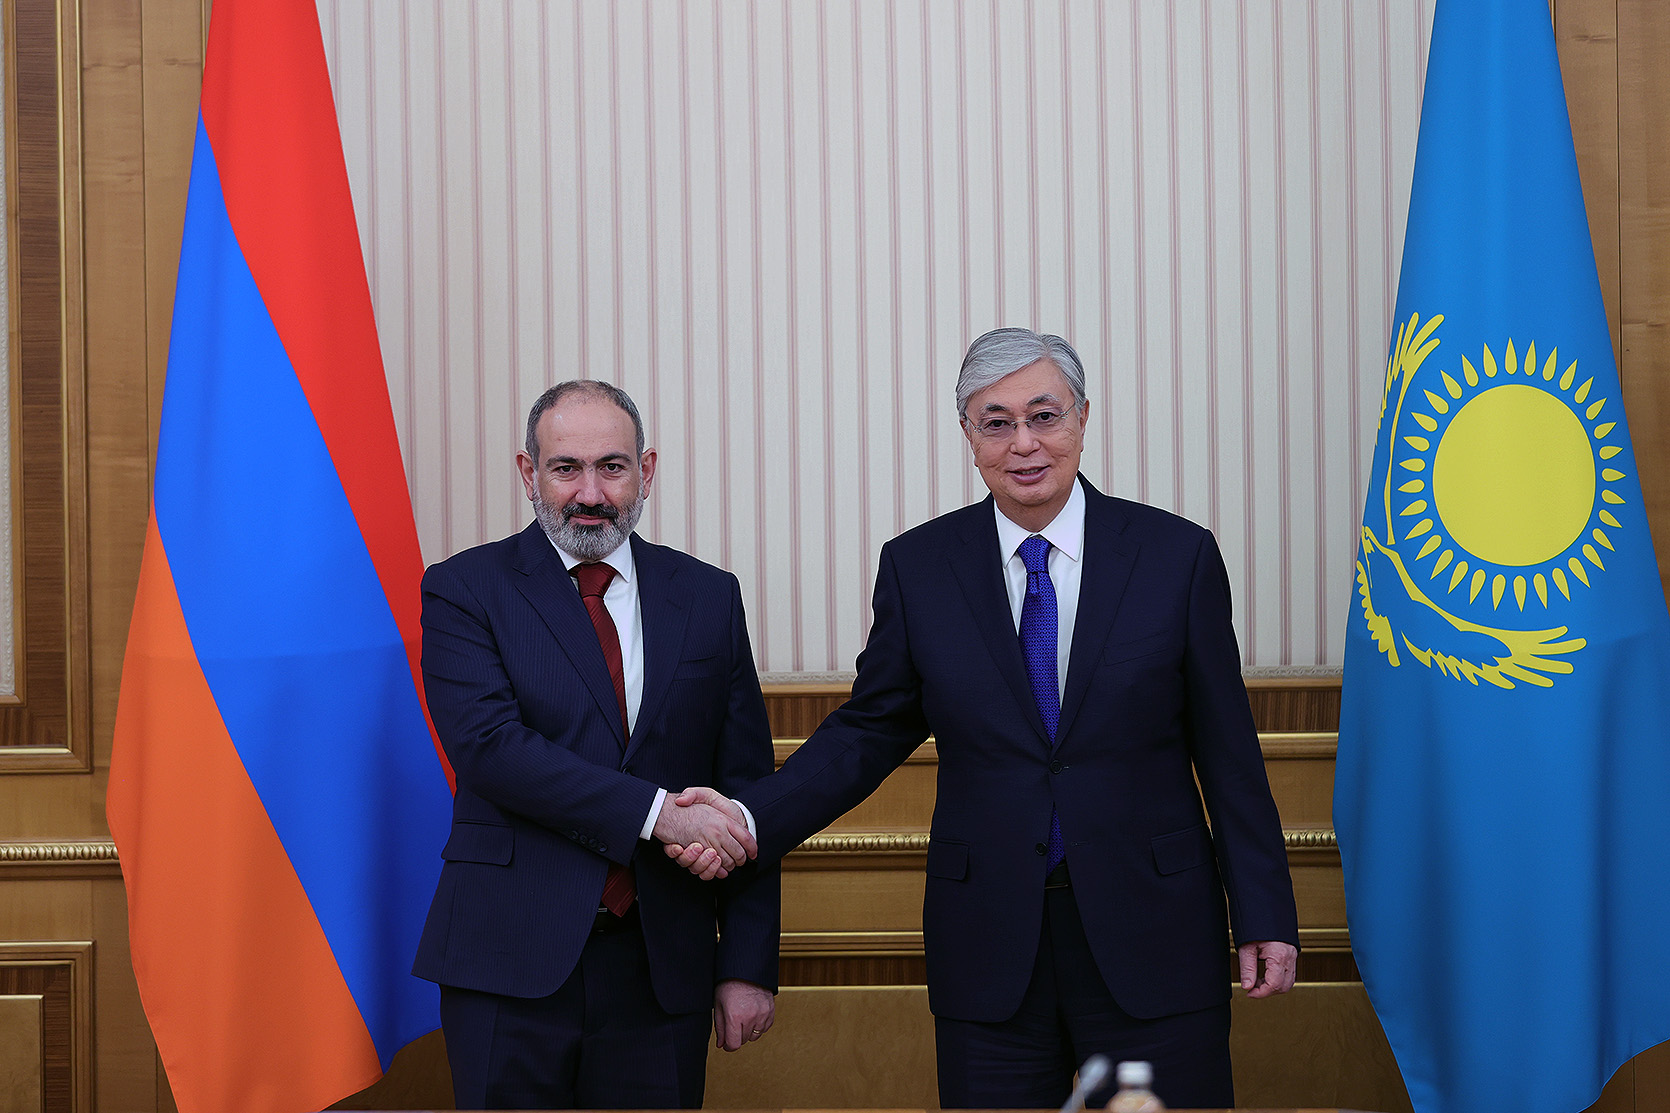 В Нур-Султане состоялась встреча премьер-министра Пашиняна и Касым-Жомарта Токаева